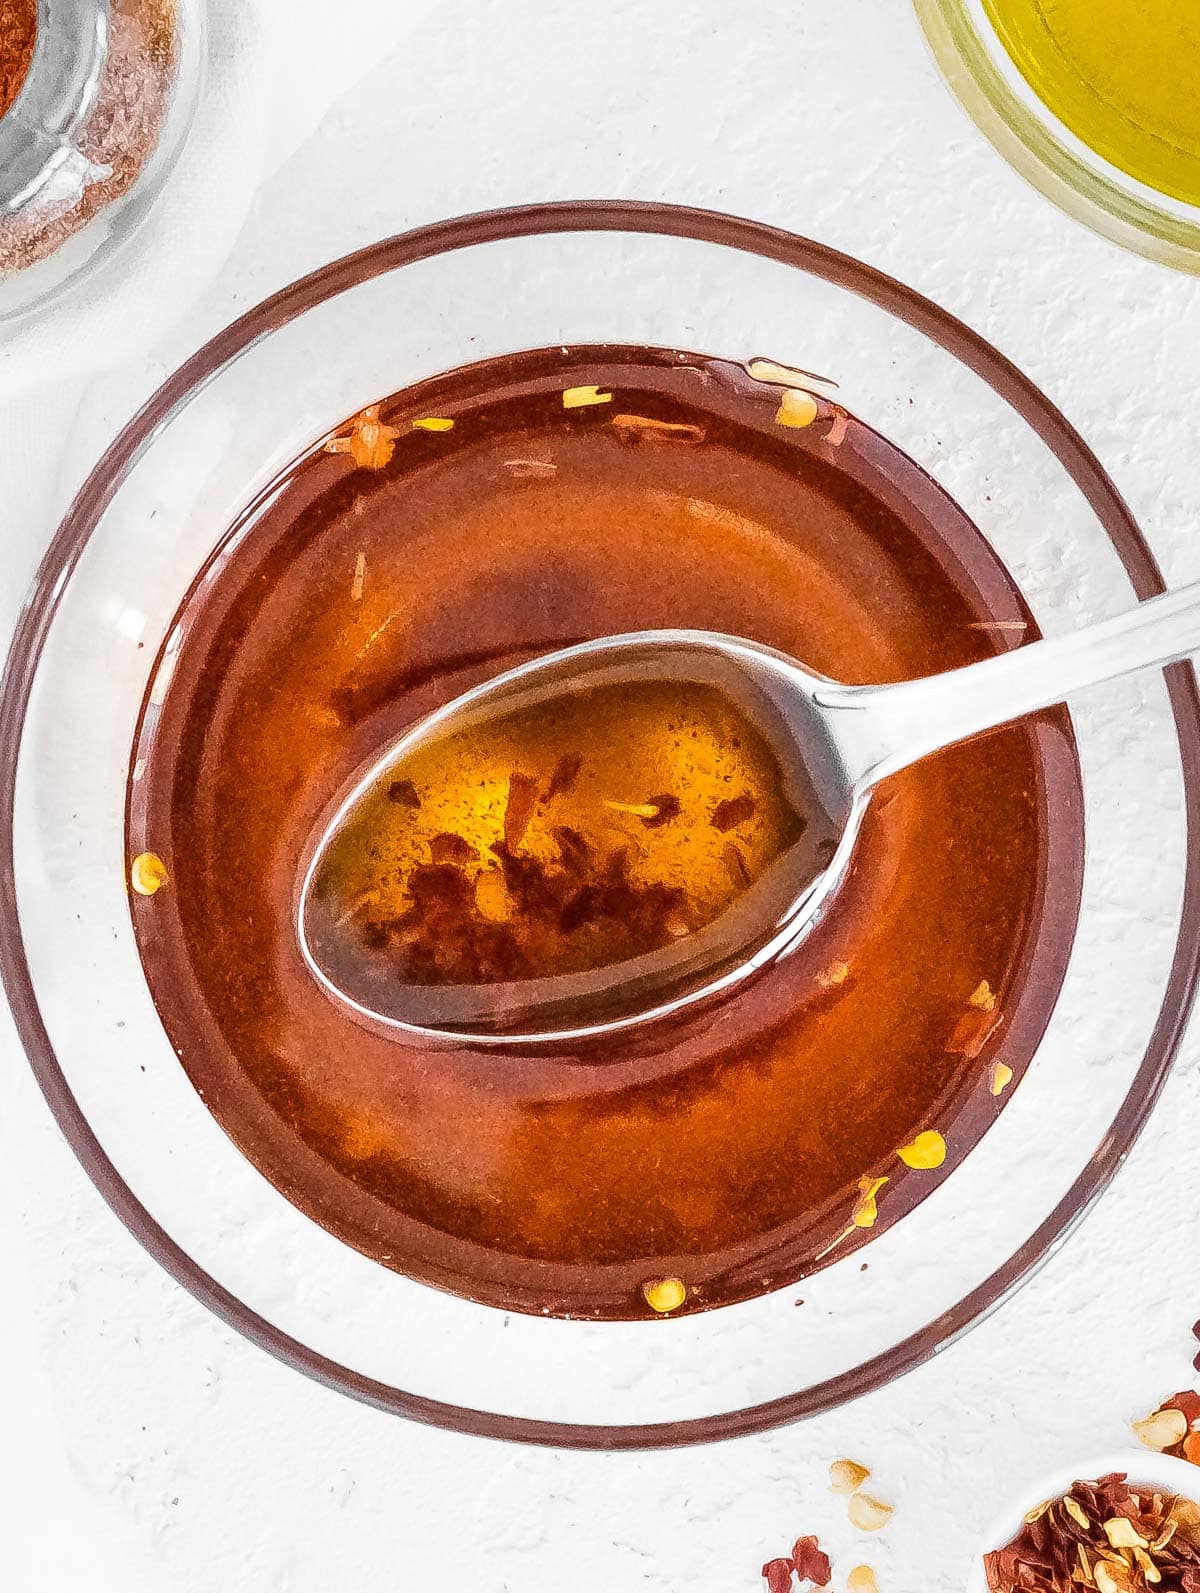 chili oil in a bowl